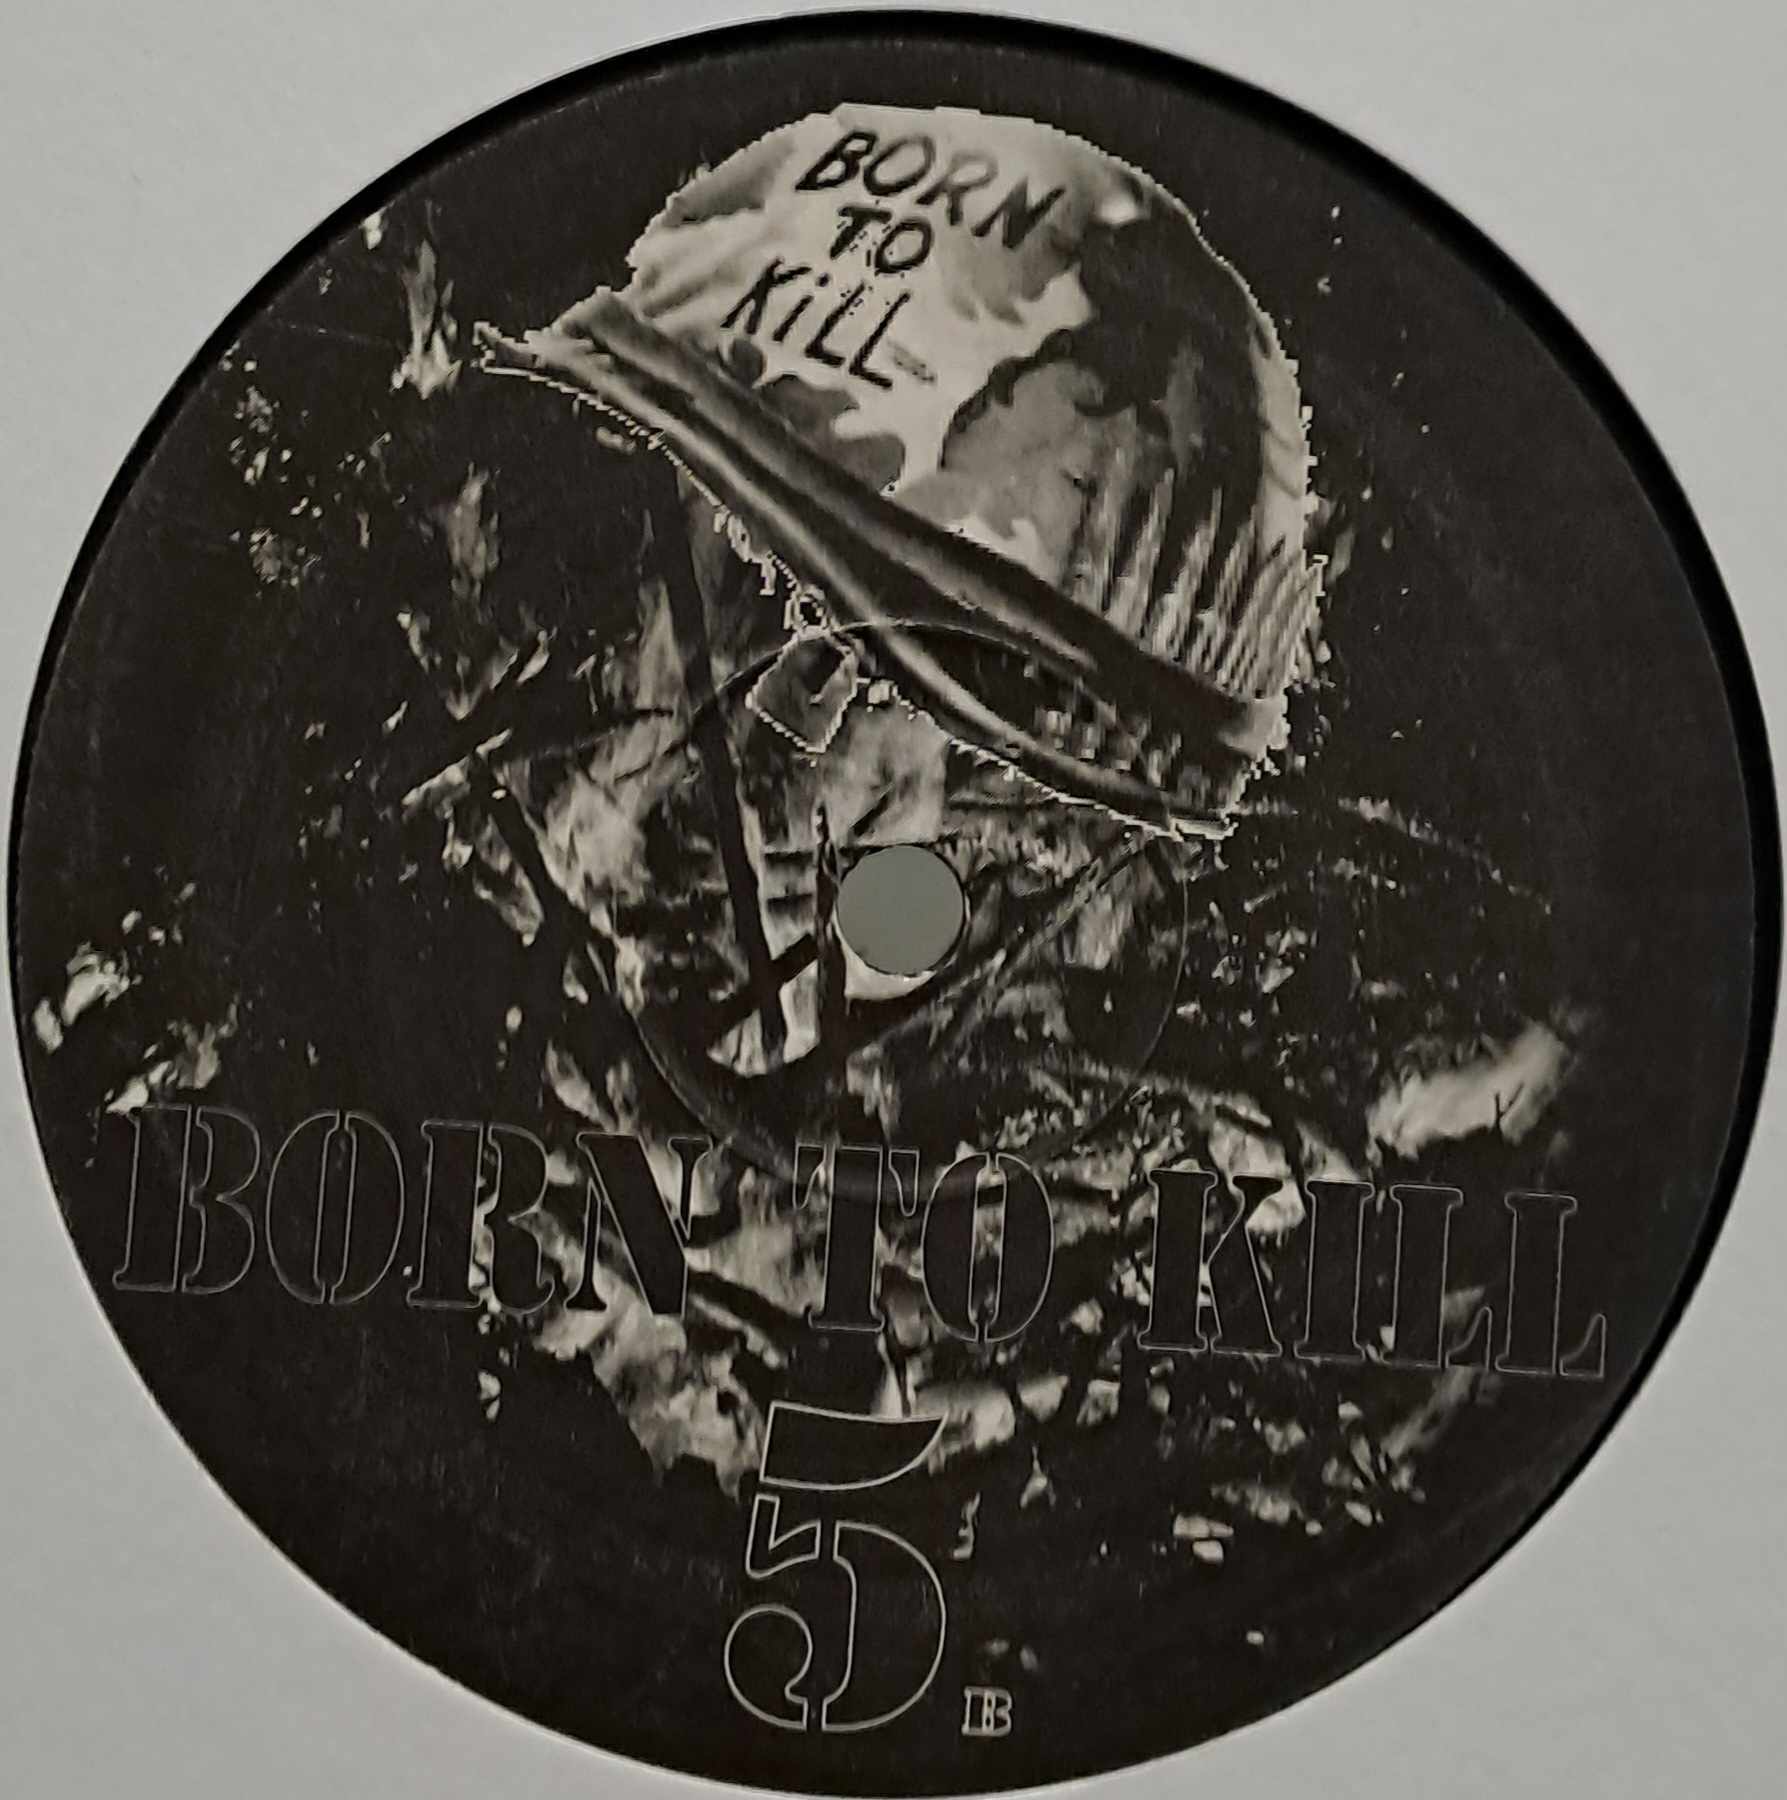 Born To Kill 005 - vinyle Breakbeat
